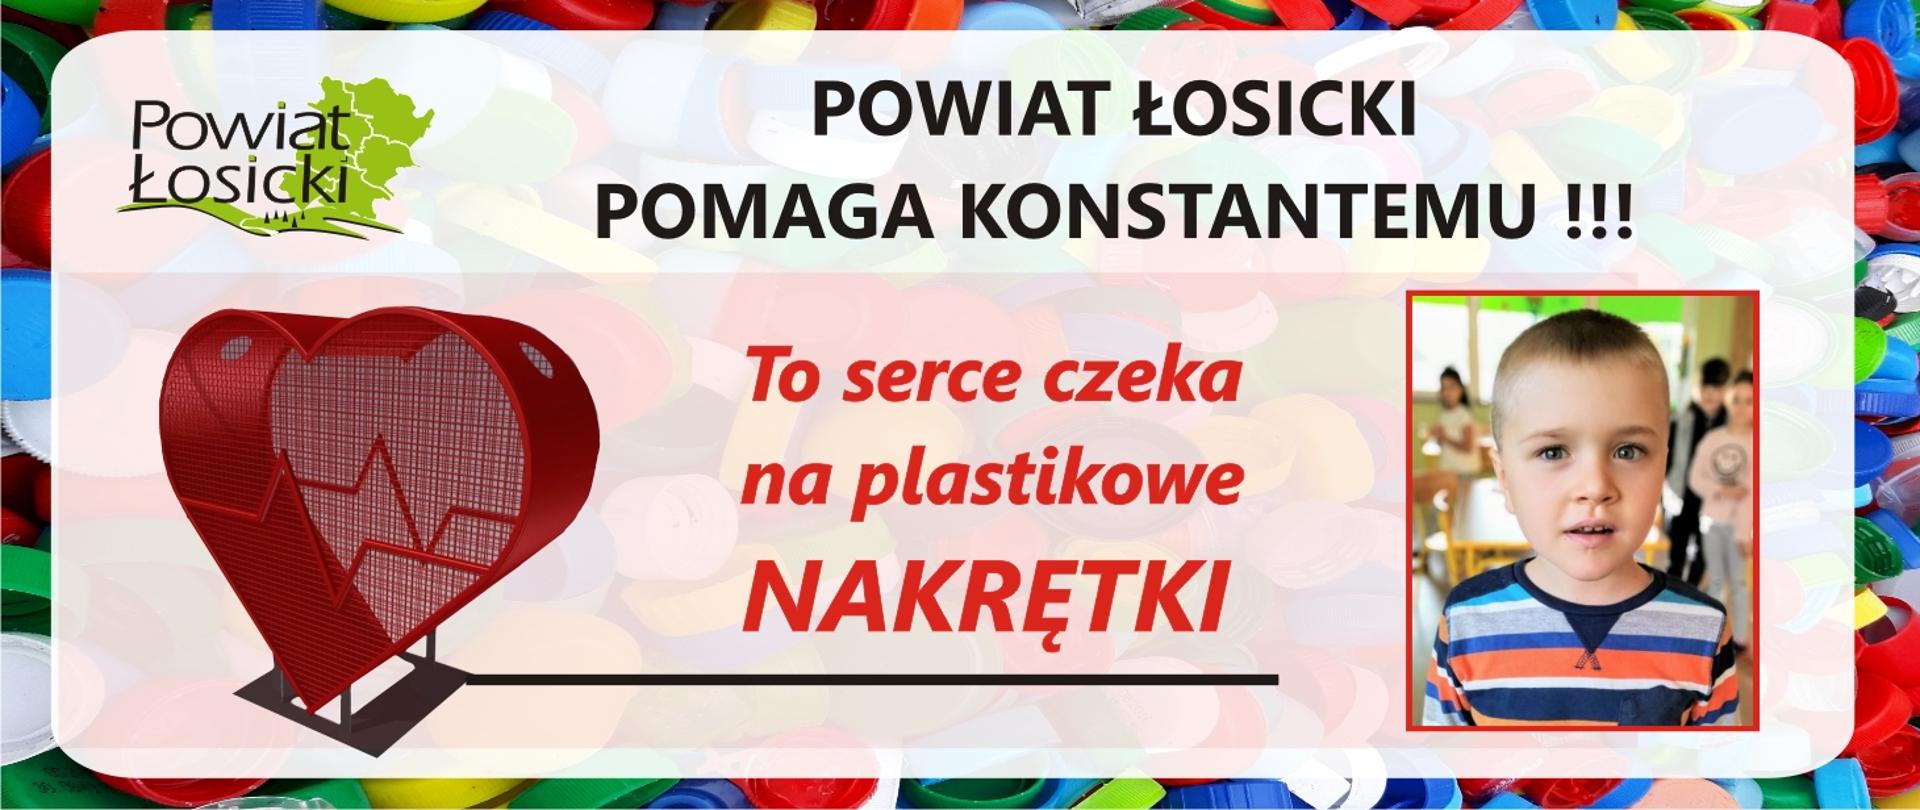 Powiat Łosicki pomaga Konstantemu. To serce czeka na plastikowe nakrętki.